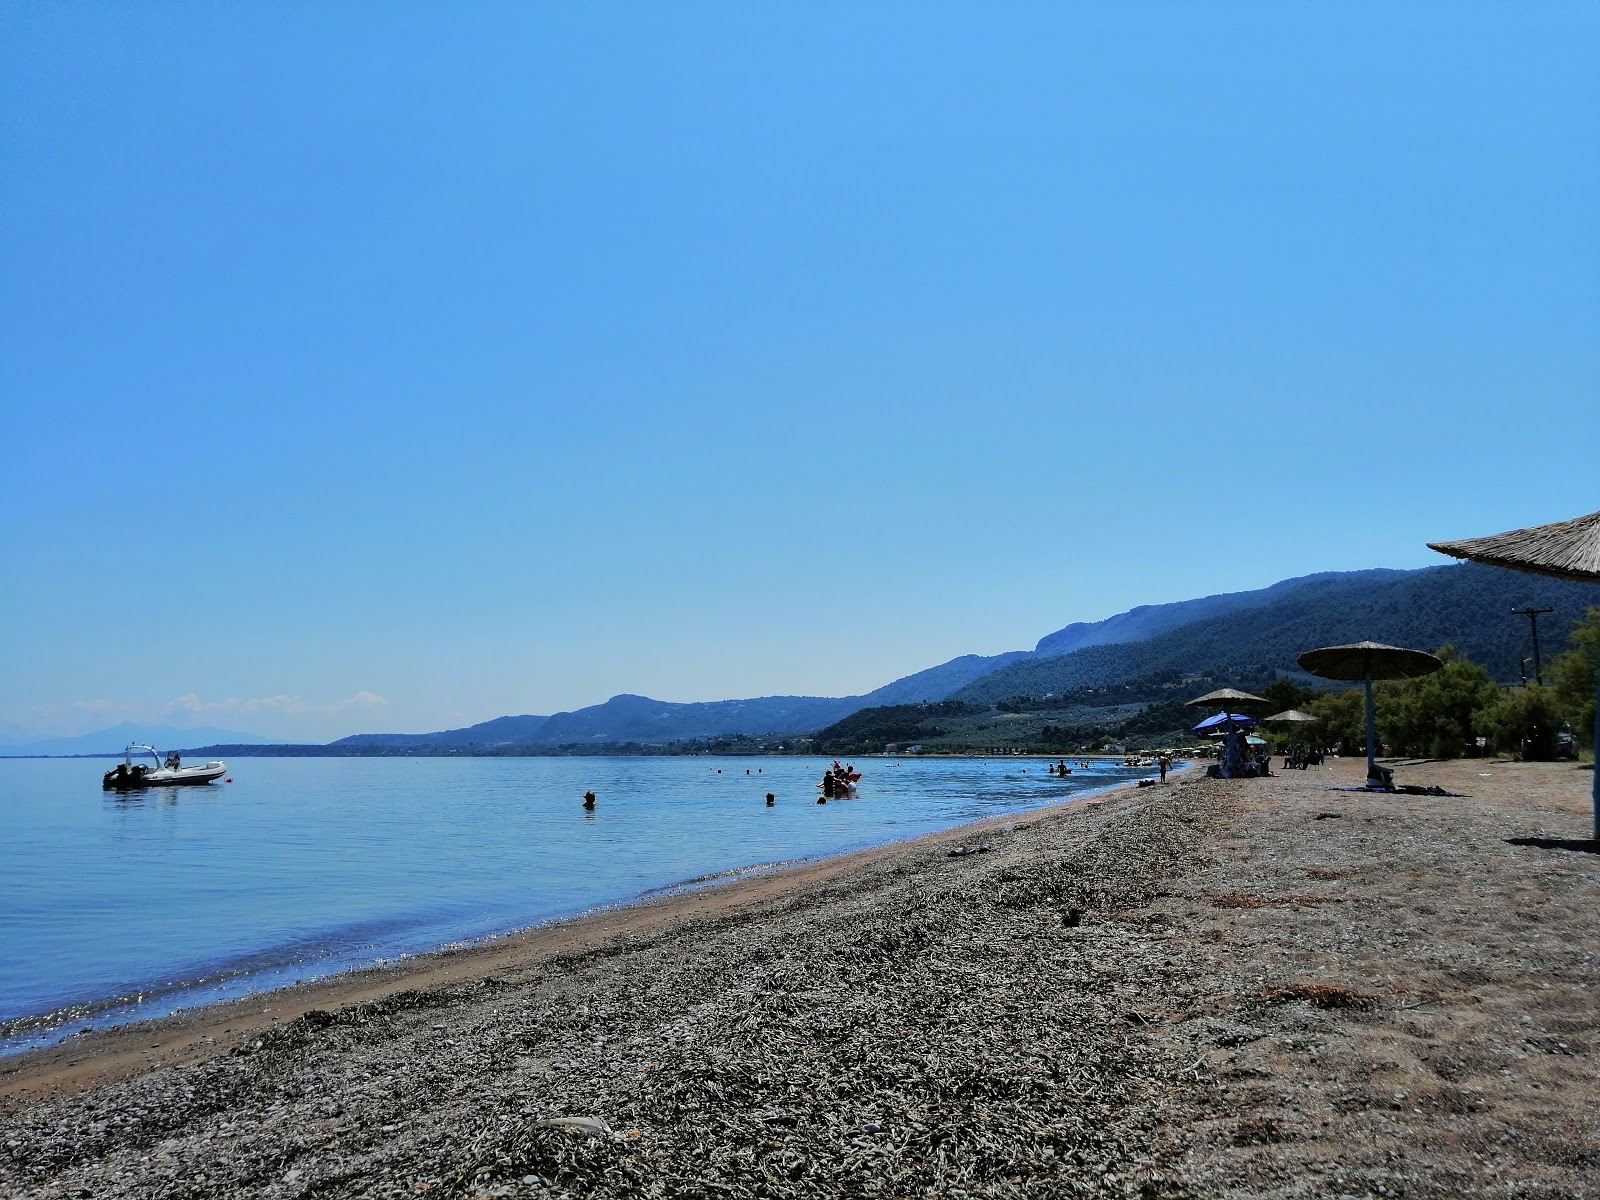 Loggos beach'in fotoğrafı kahverengi çakıl yüzey ile